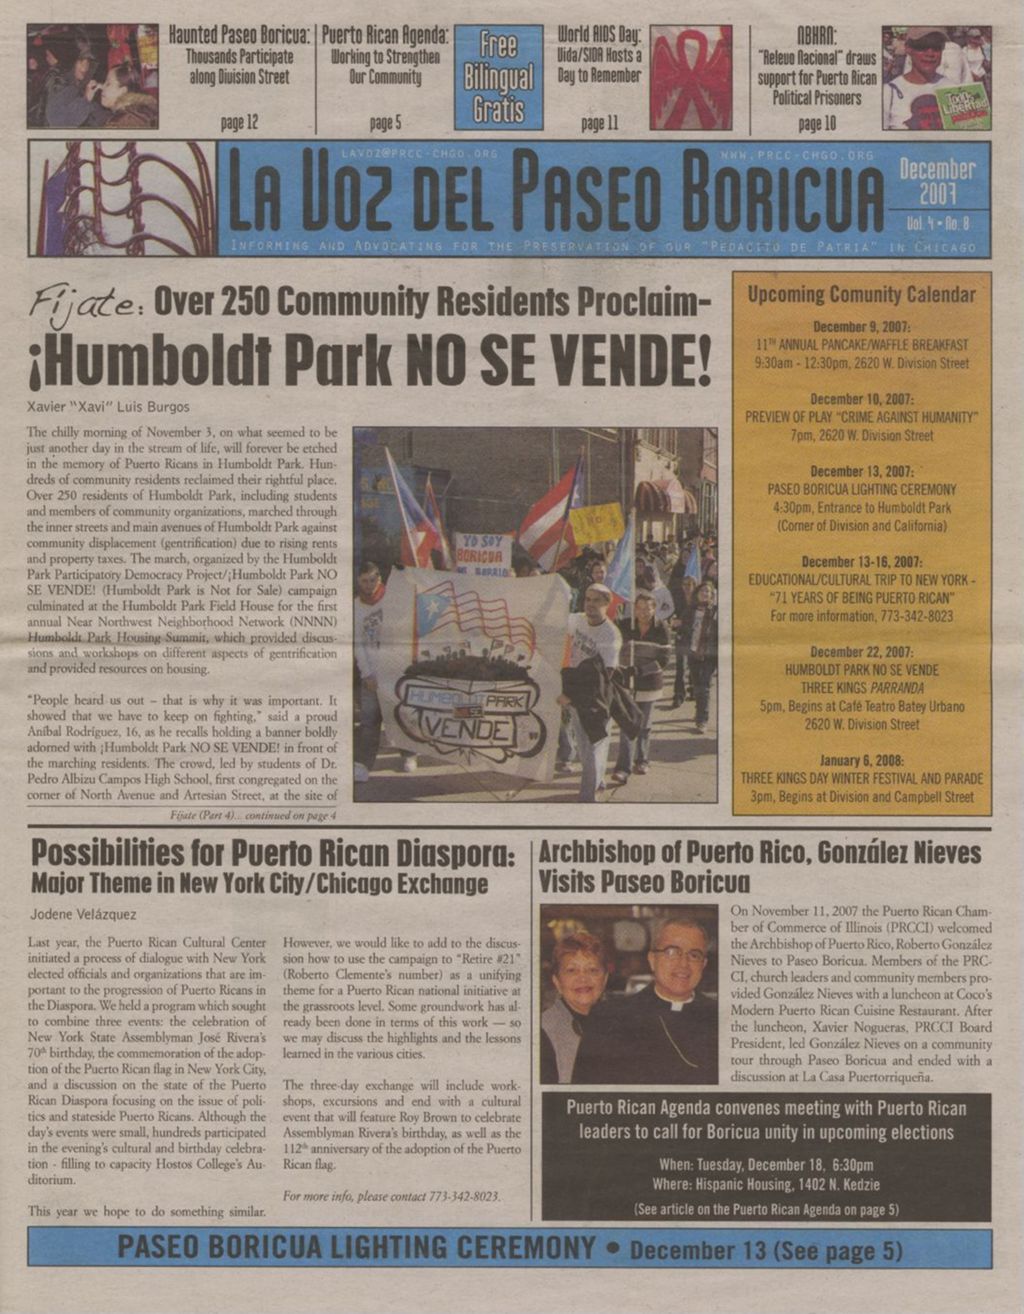 La Voz del Paseo Boricua; December 2007; vol. 4, no. 8 (Spanish and English covers)